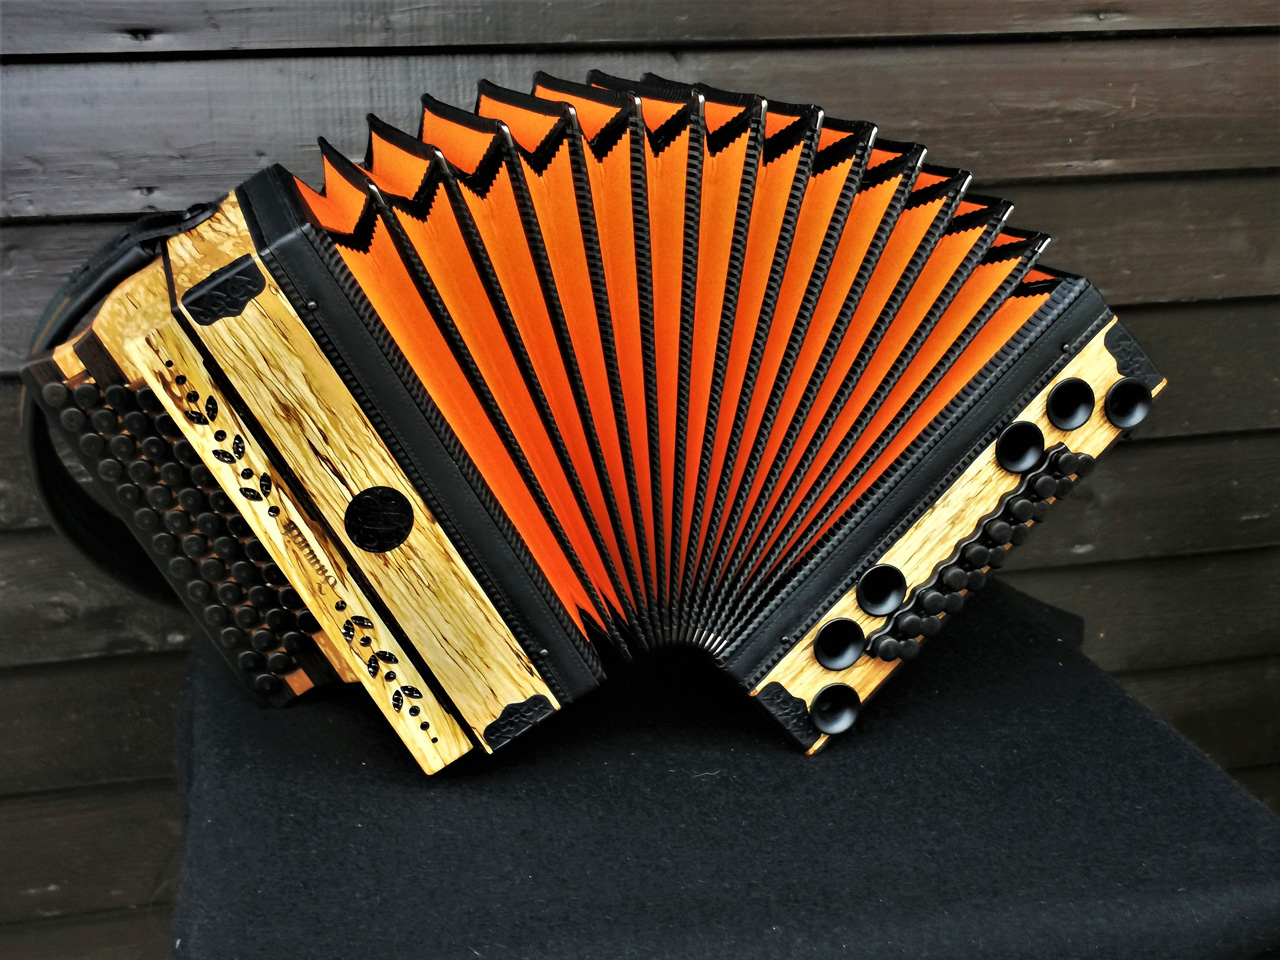 Steirische Harmonika aus Erlenholz